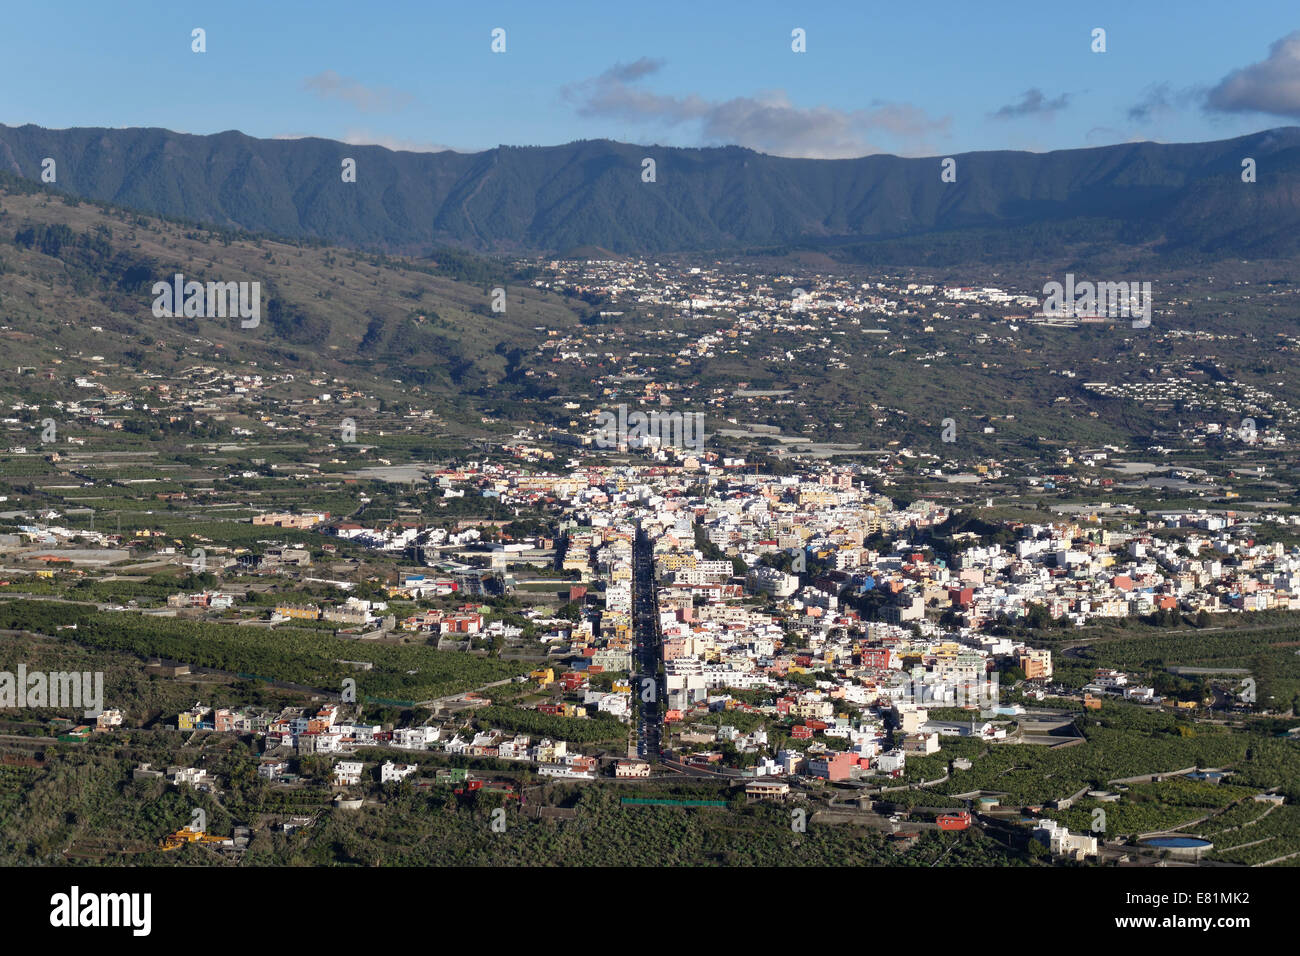 Towns of Los Llanos de Aridane and El Paso, view from the Mirador del Time or El Time, La Palma, Canary Islands, Spain Stock Photo